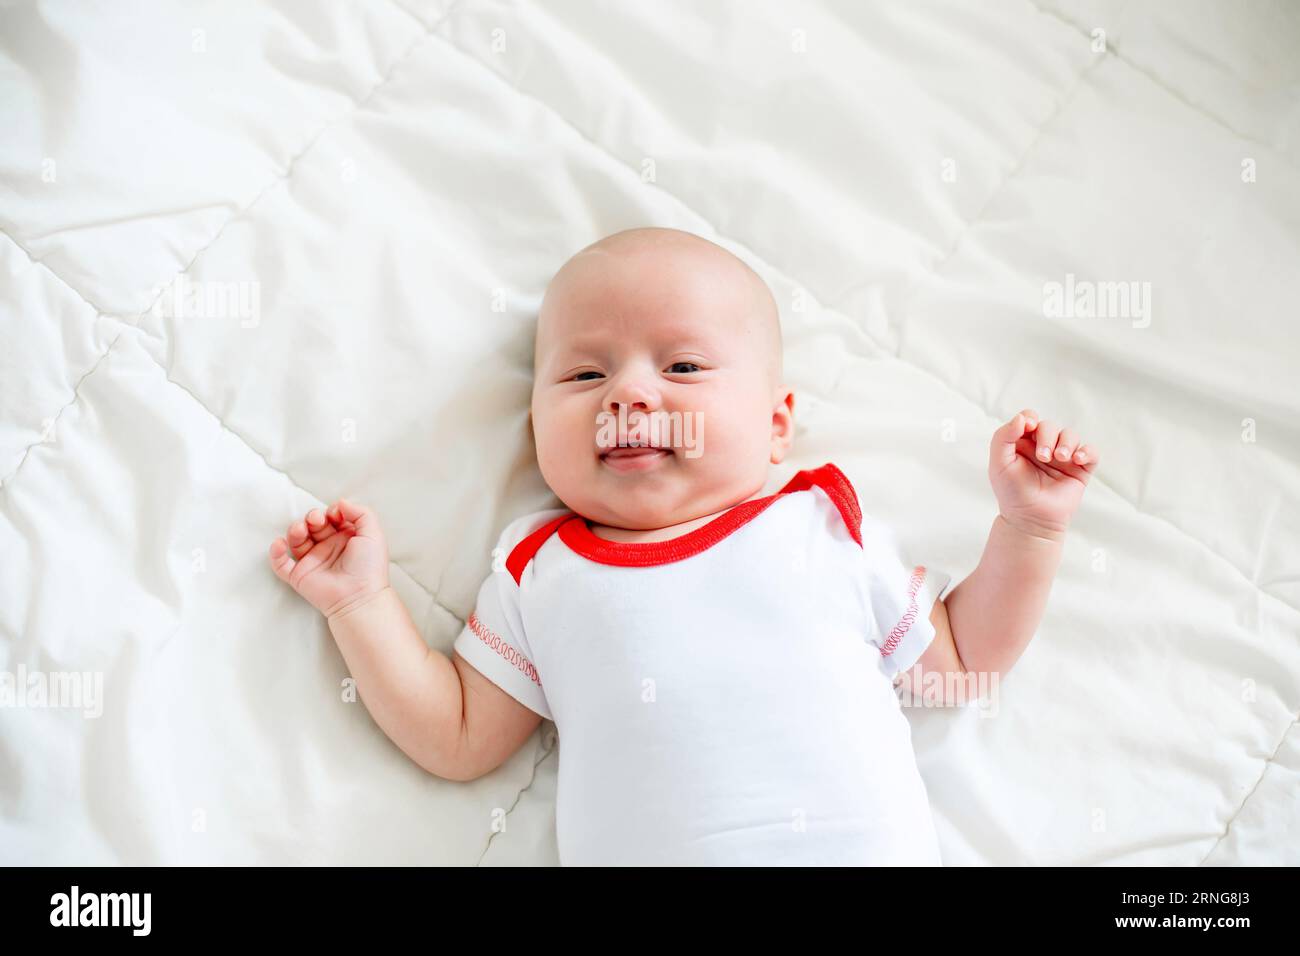 Ein Neugeborenes liegt auf einer weißen Decke, die Arme sind seitlich ausgebreitet. Stockfoto